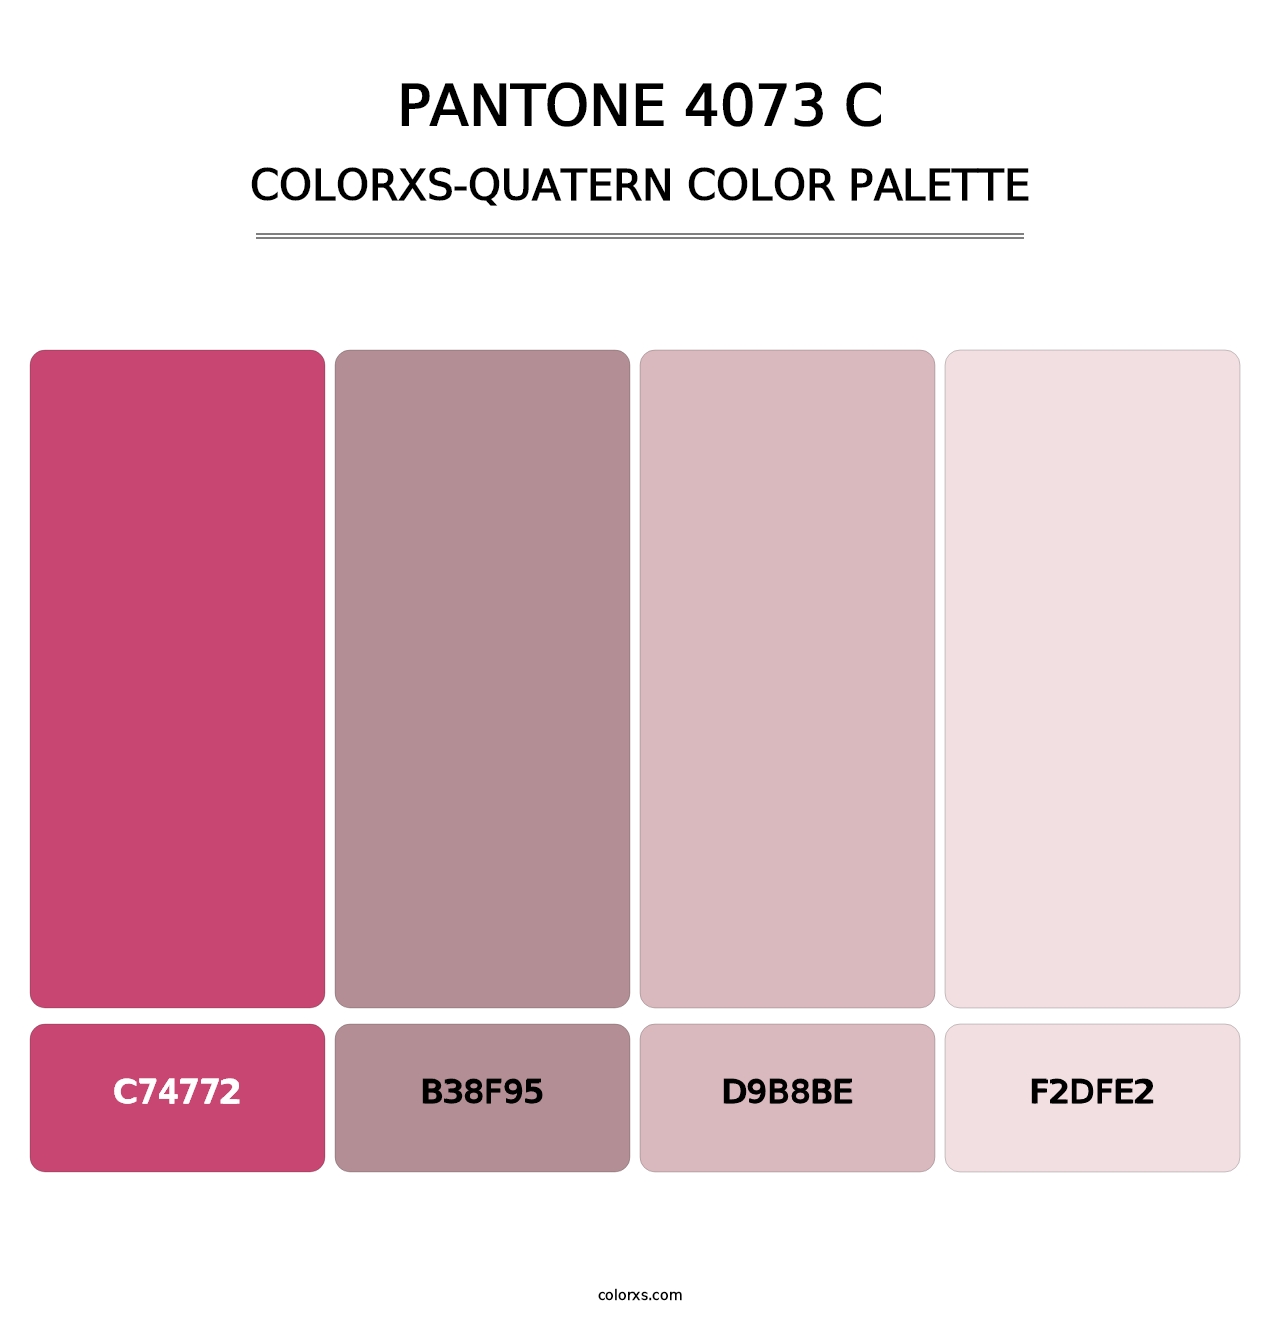 PANTONE 4073 C - Colorxs Quatern Palette